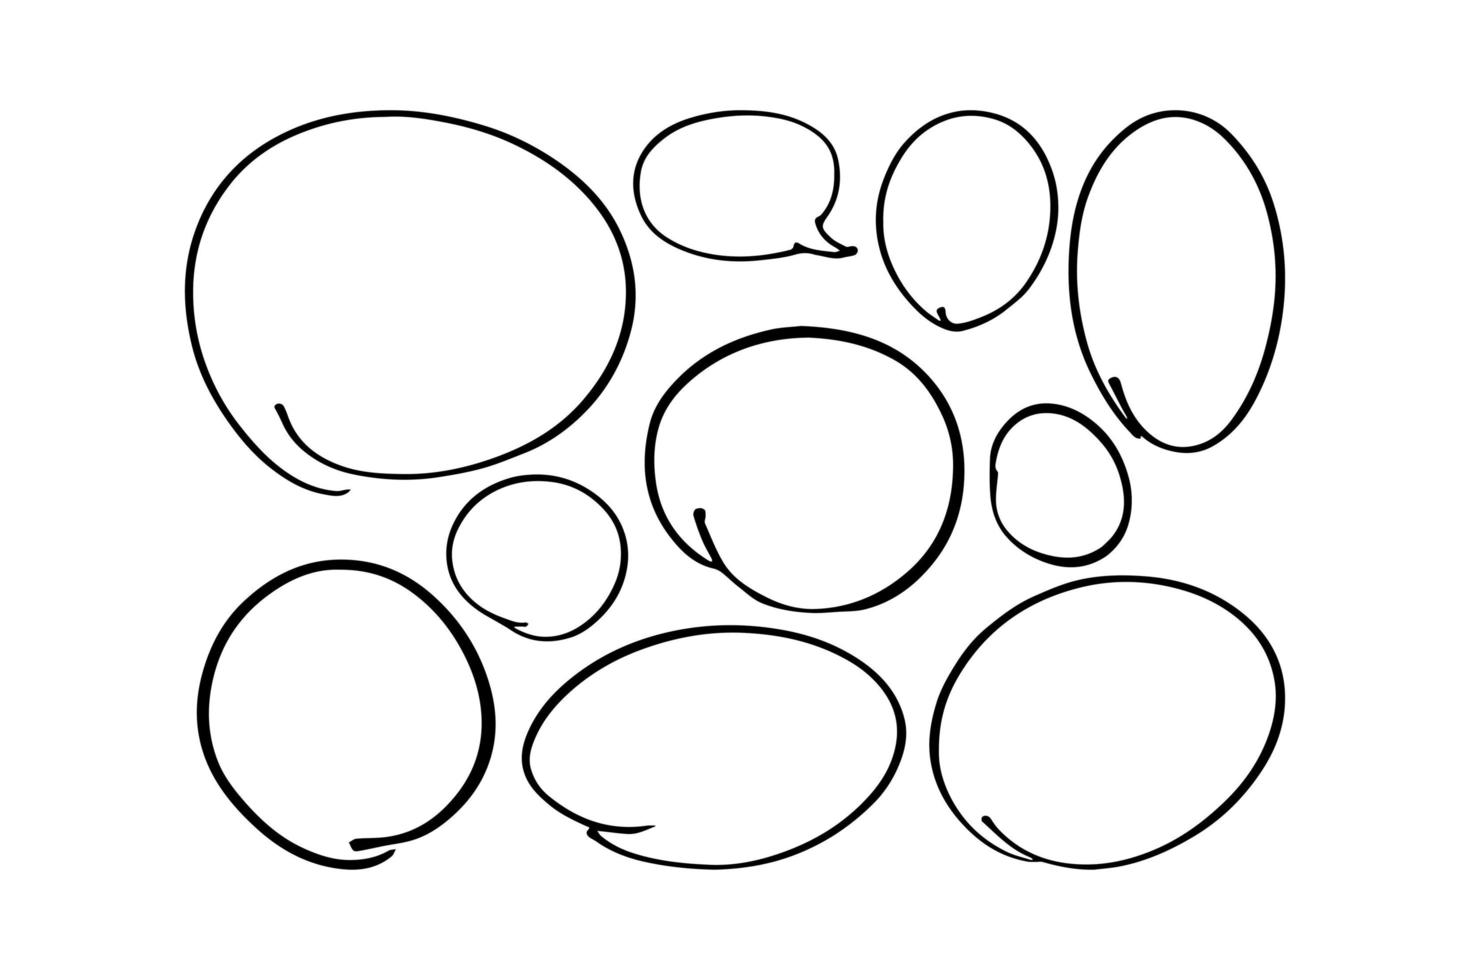 définir des ovales dessinés à la main, des cercles de stylo. cercle pour surligner le texte. illustration vectorielle. vecteur